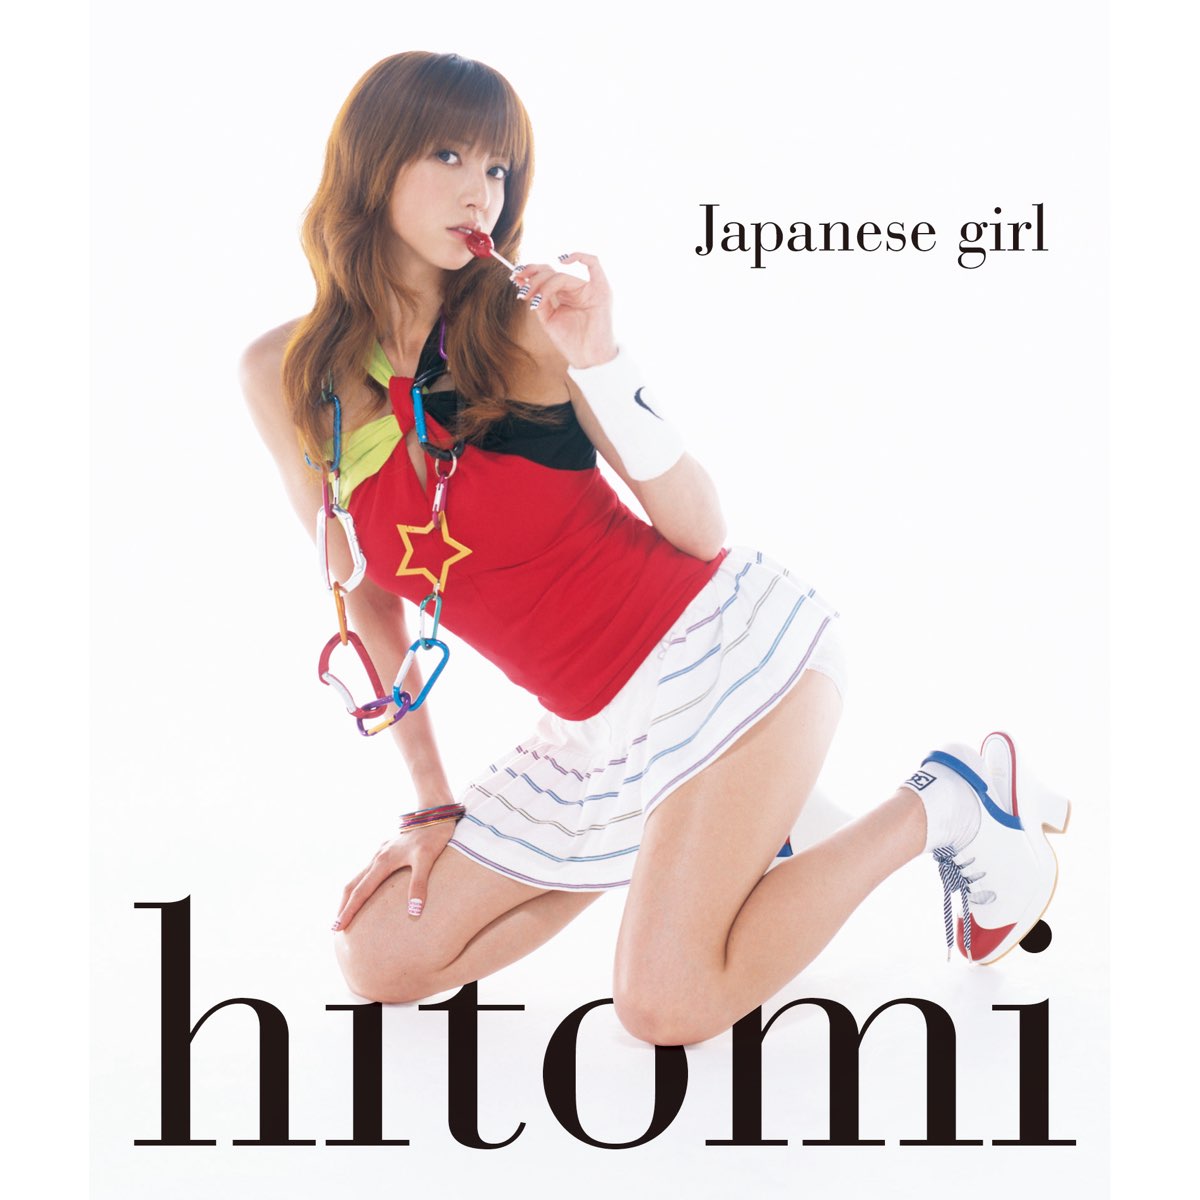 Hitomi japanese girl